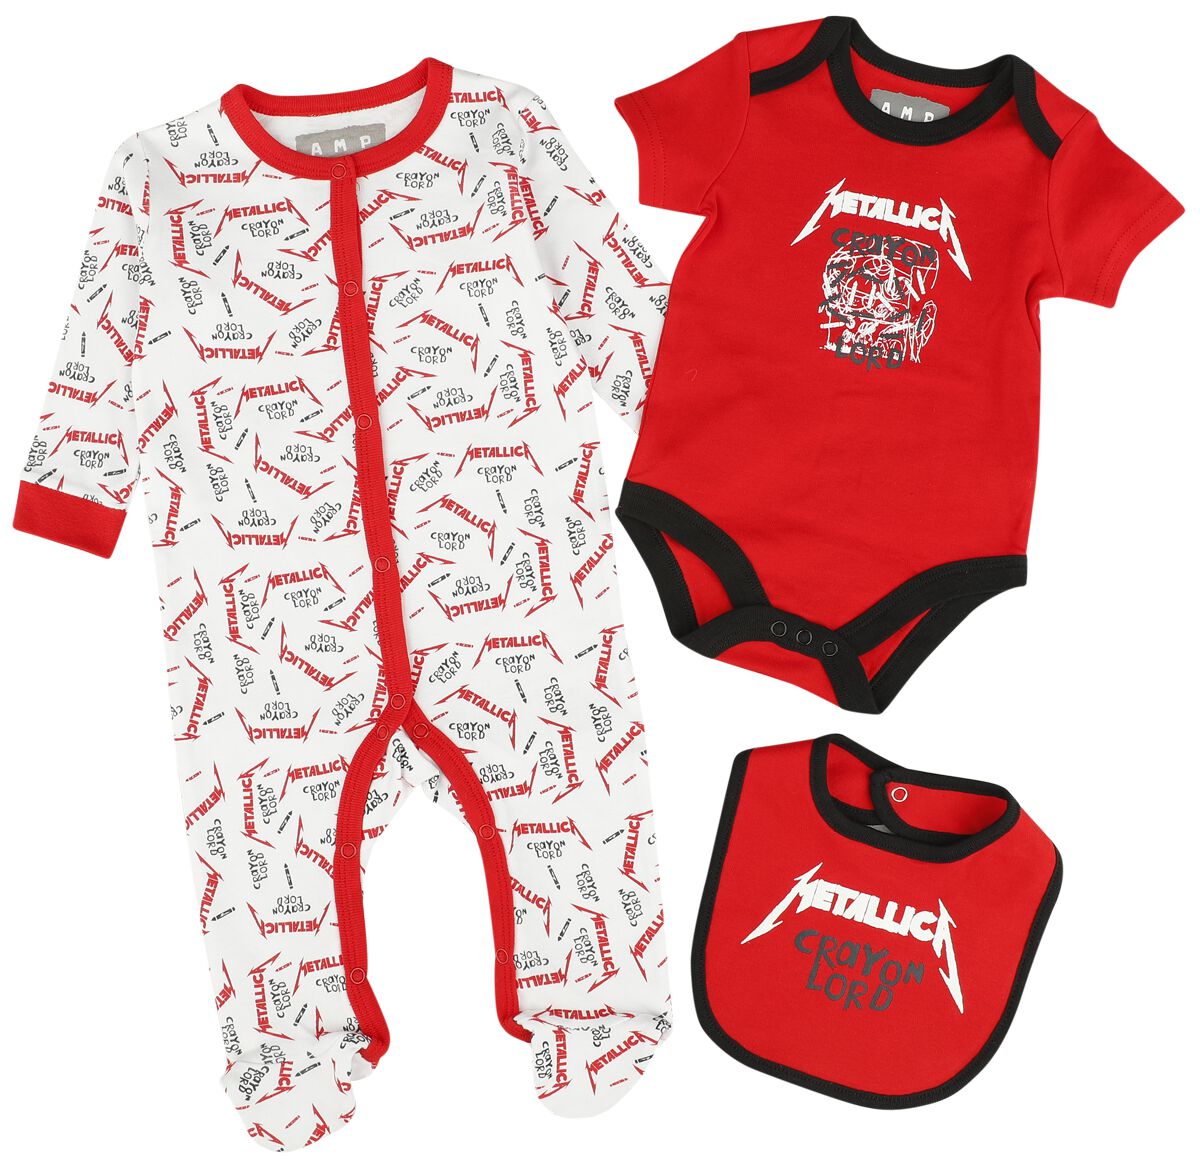 Metallica Set für Neugeborene - Amplified Collection - Baby Set - für Mädchen & Jungen - multicolor  - Lizenziertes Merchandise!